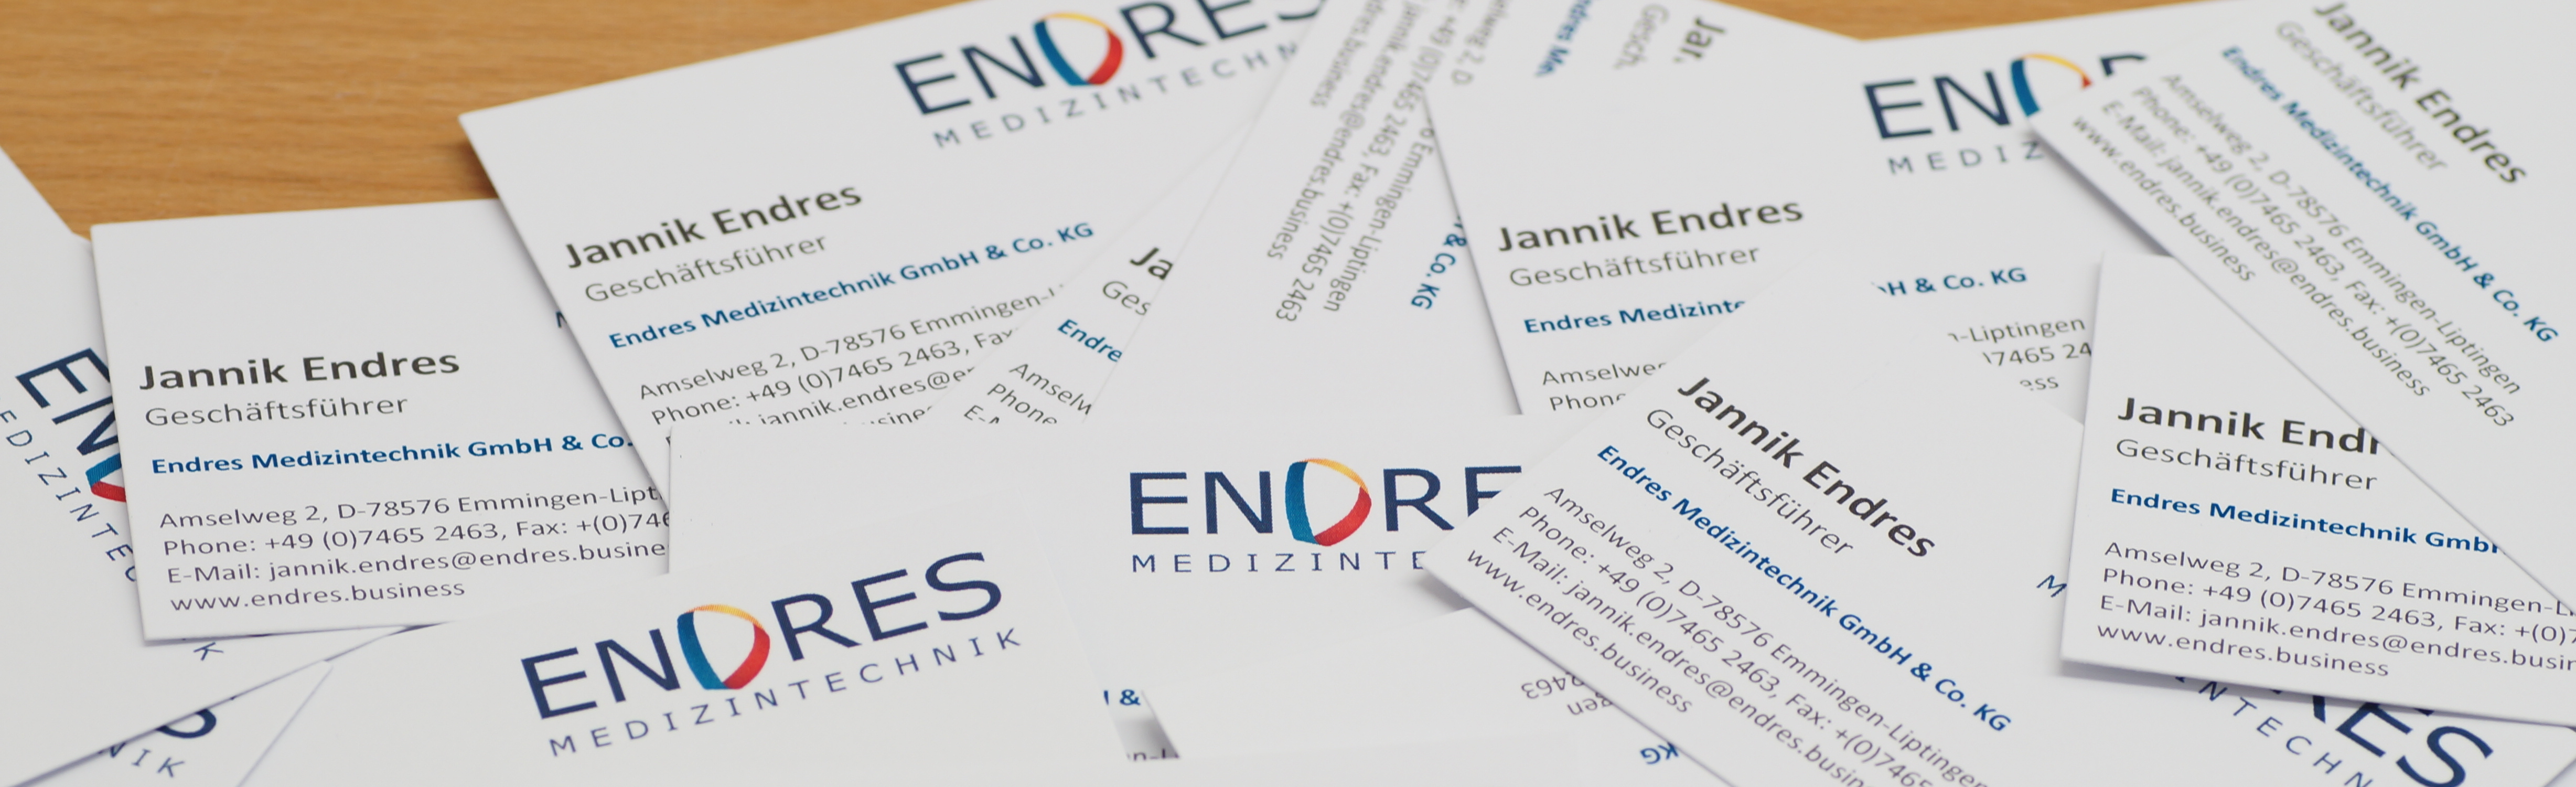 business cards ceo Jannik Endres